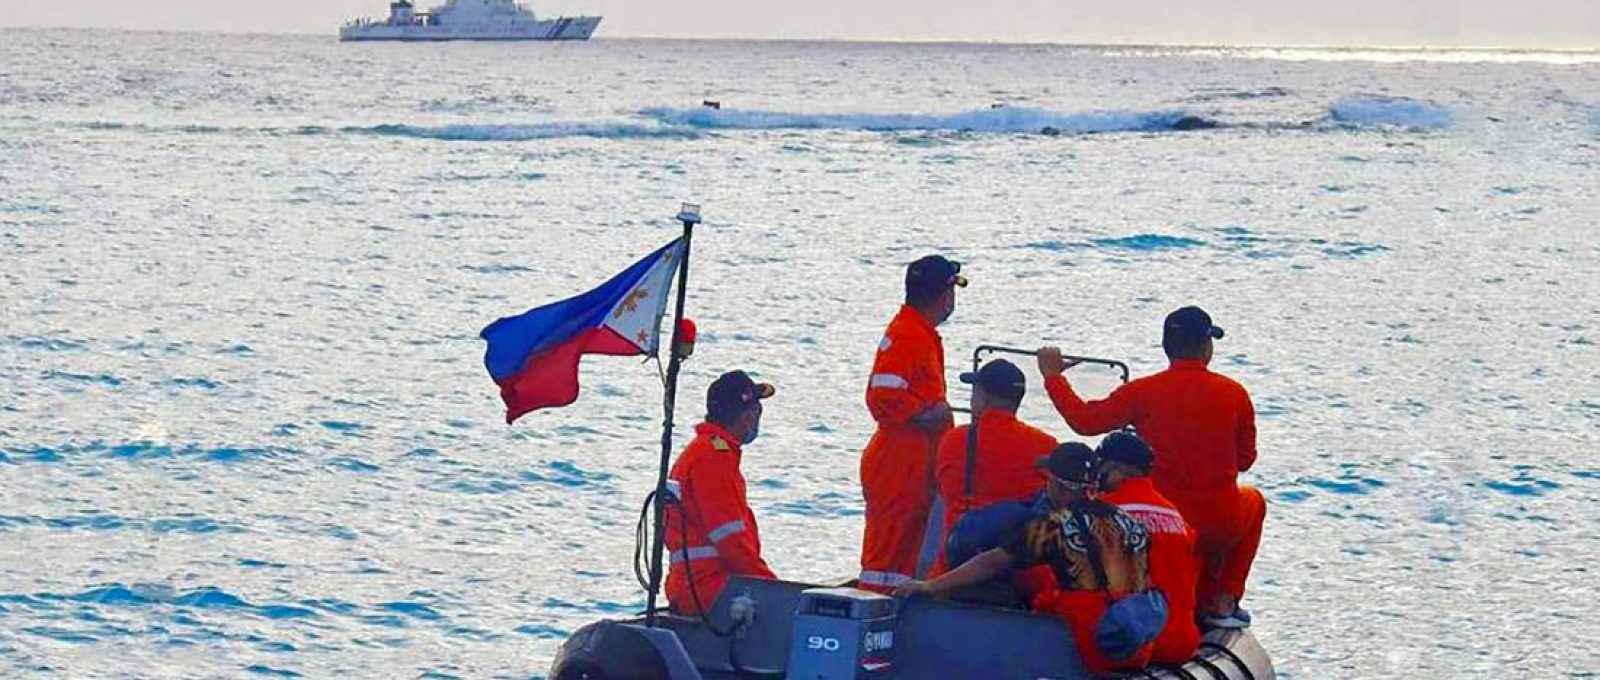 Foto fornecida ontem pela Guarda Costeira das Filipinas mostra pessoal em um exercício marítimo perto da Ilha de Thitu, no Mar da China Meridional (Foto: Guarda Costeira das Filipinas/AFP).